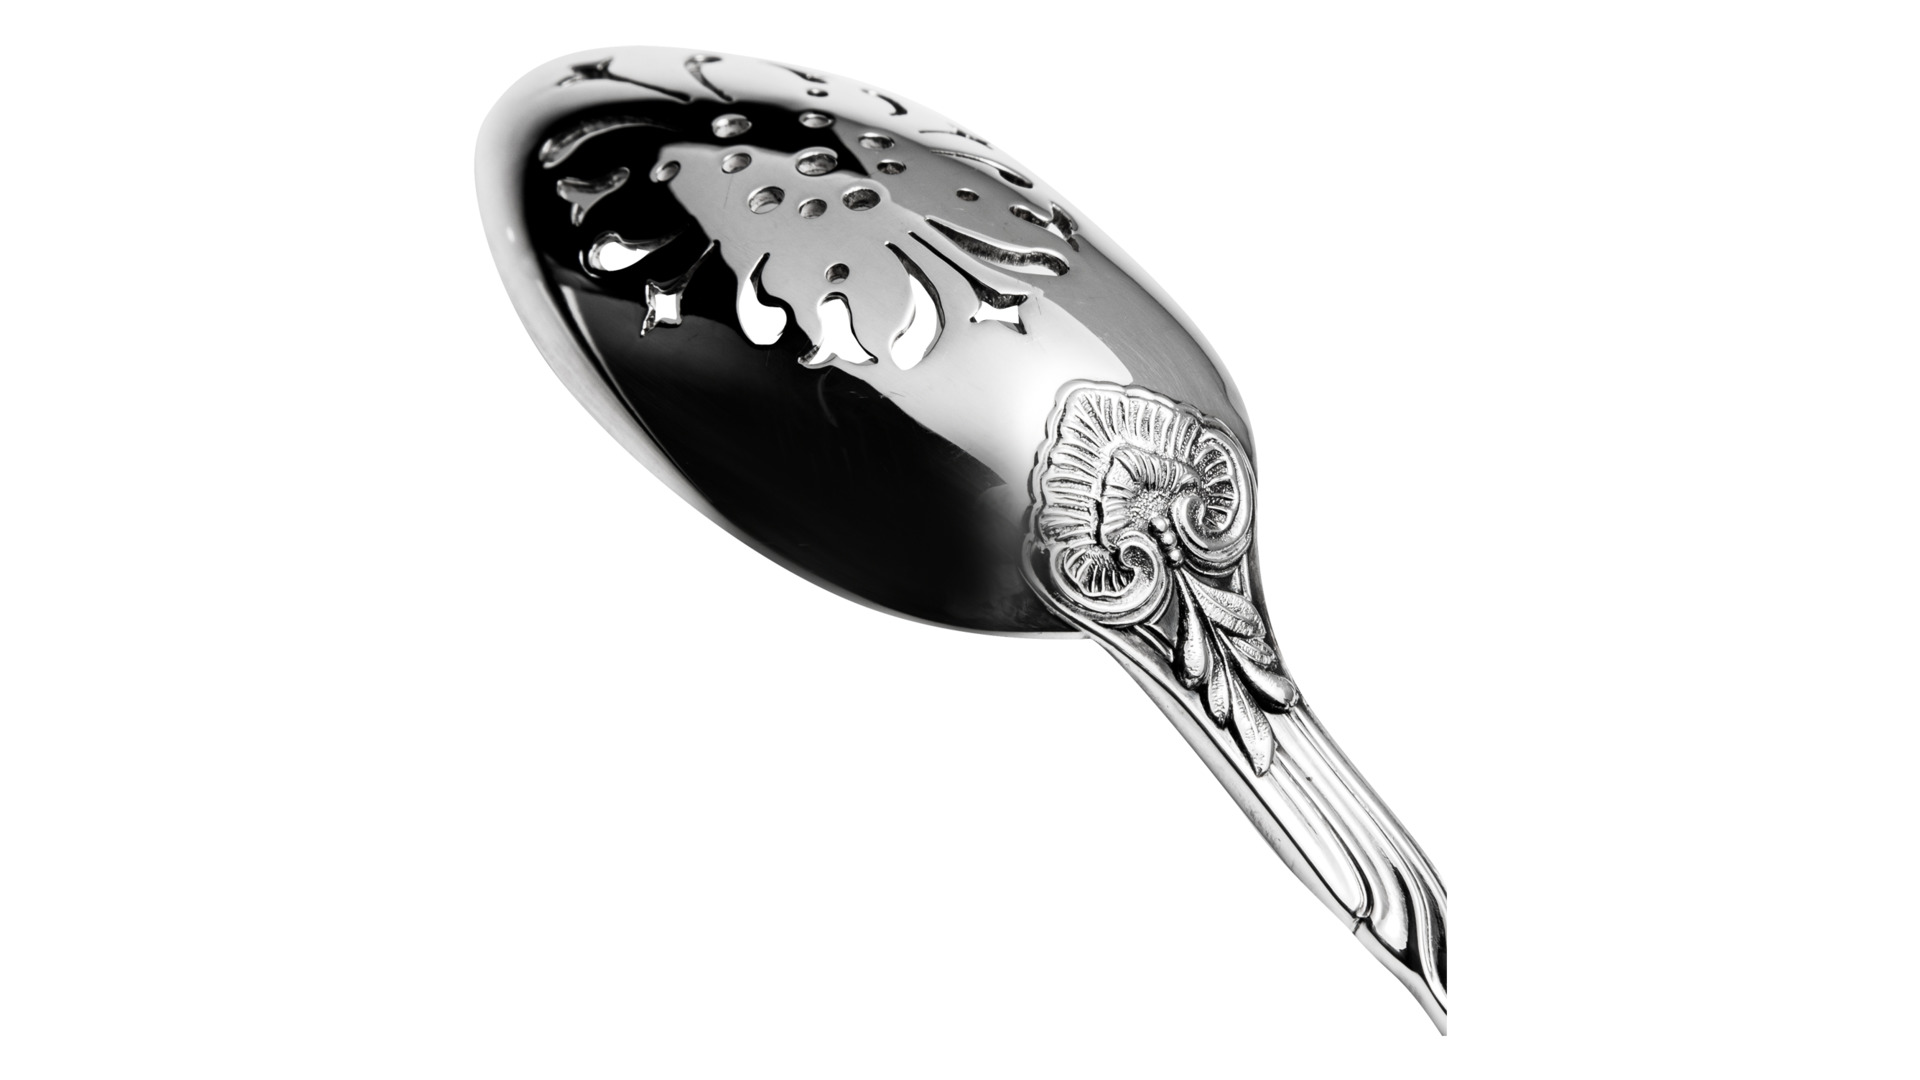 Ложка десертная Odiot Мессоне 19,3 см, серебро 925